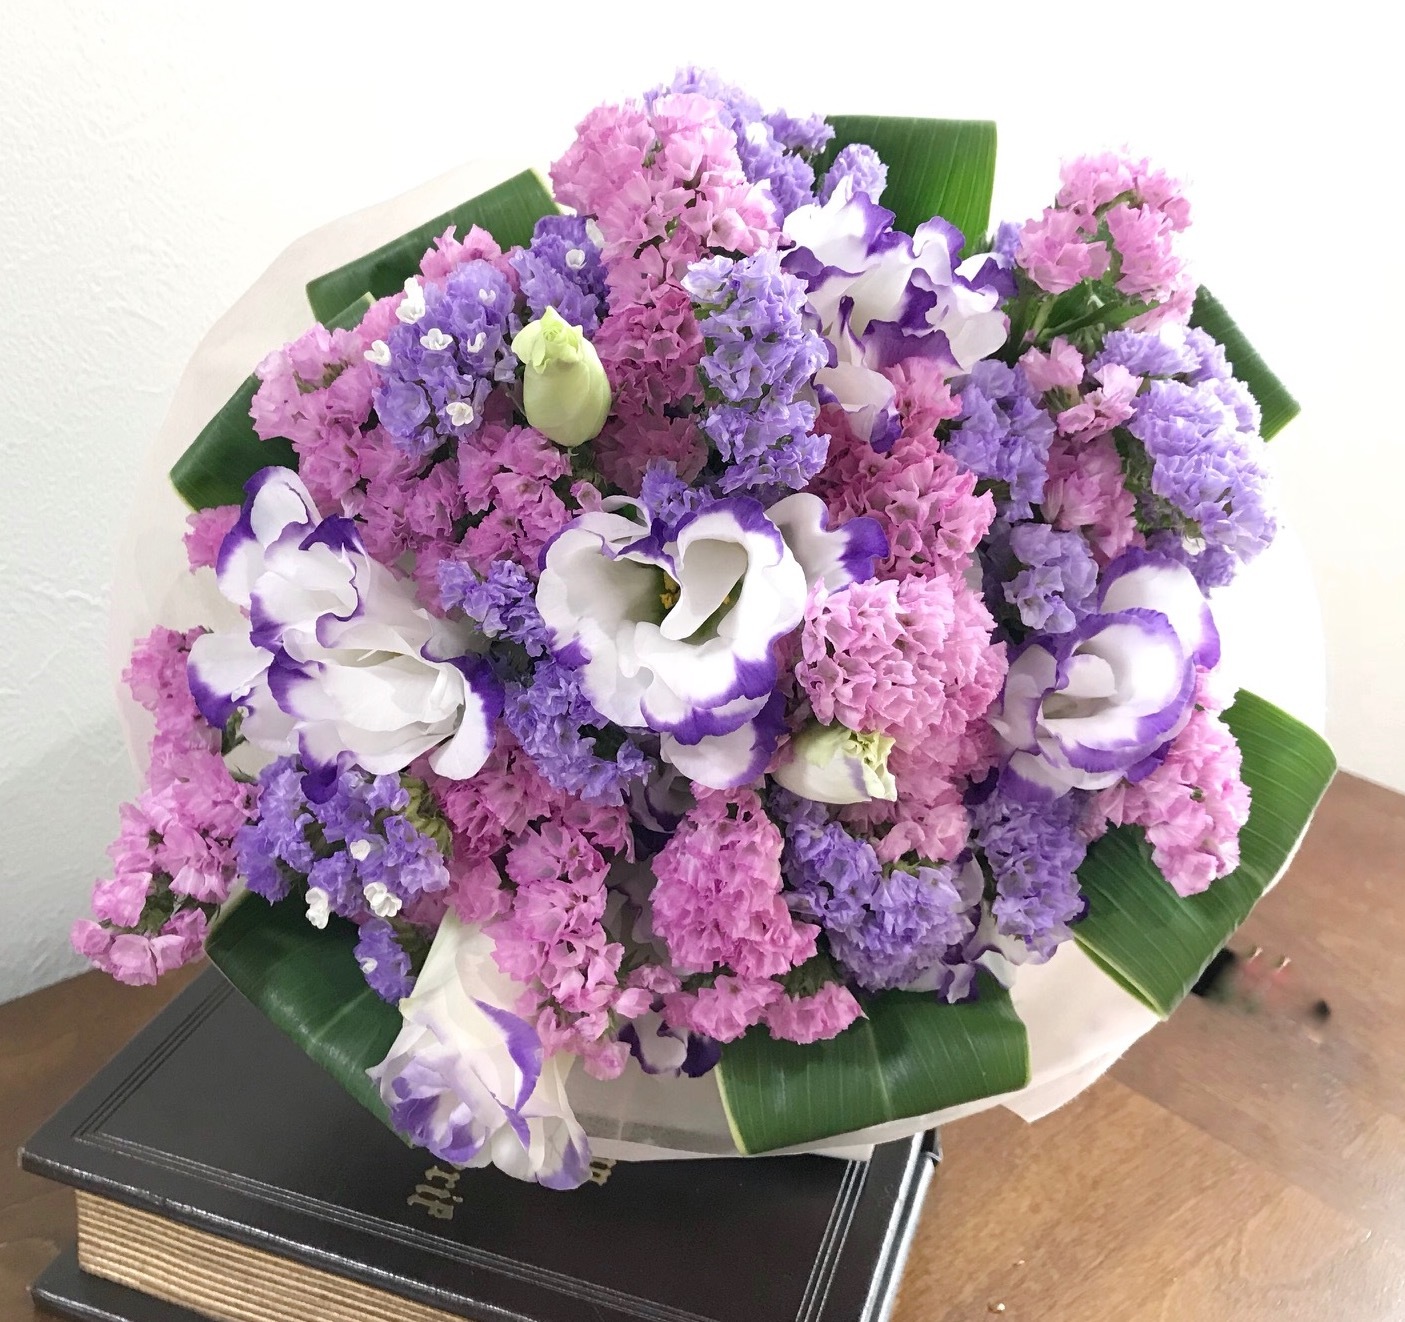 スターチスのそのまま飾れるブーケ Miraflora ミラフローラ花のオンラインショップ